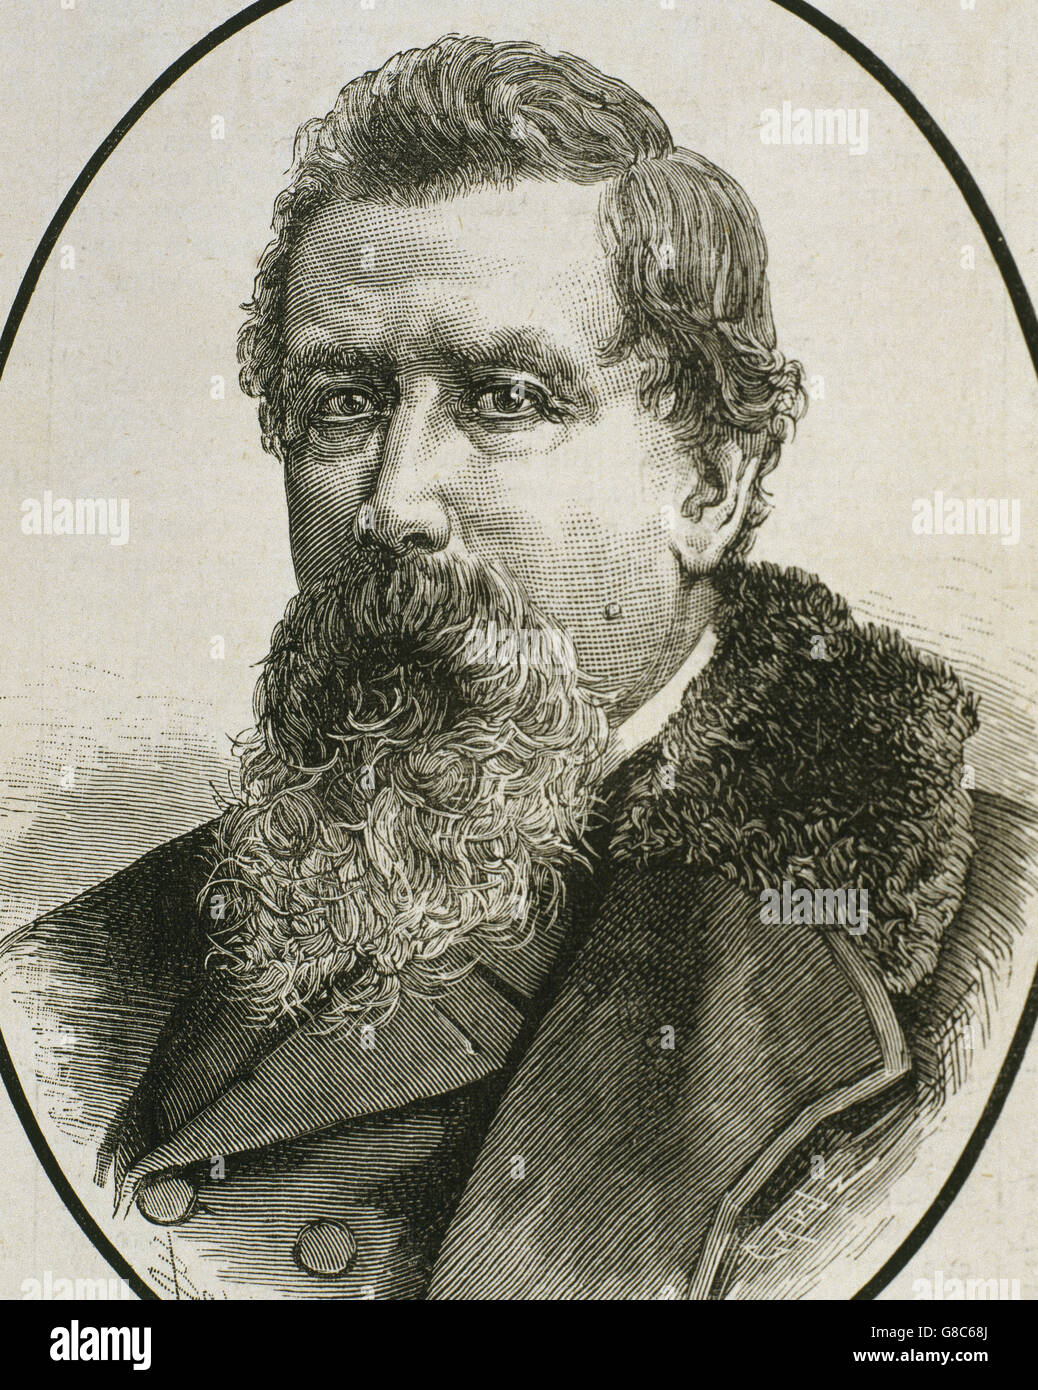 Amilcare Ponchielli (1834-1886). Compositor italiano. Retrato. Grabado. Foto de stock